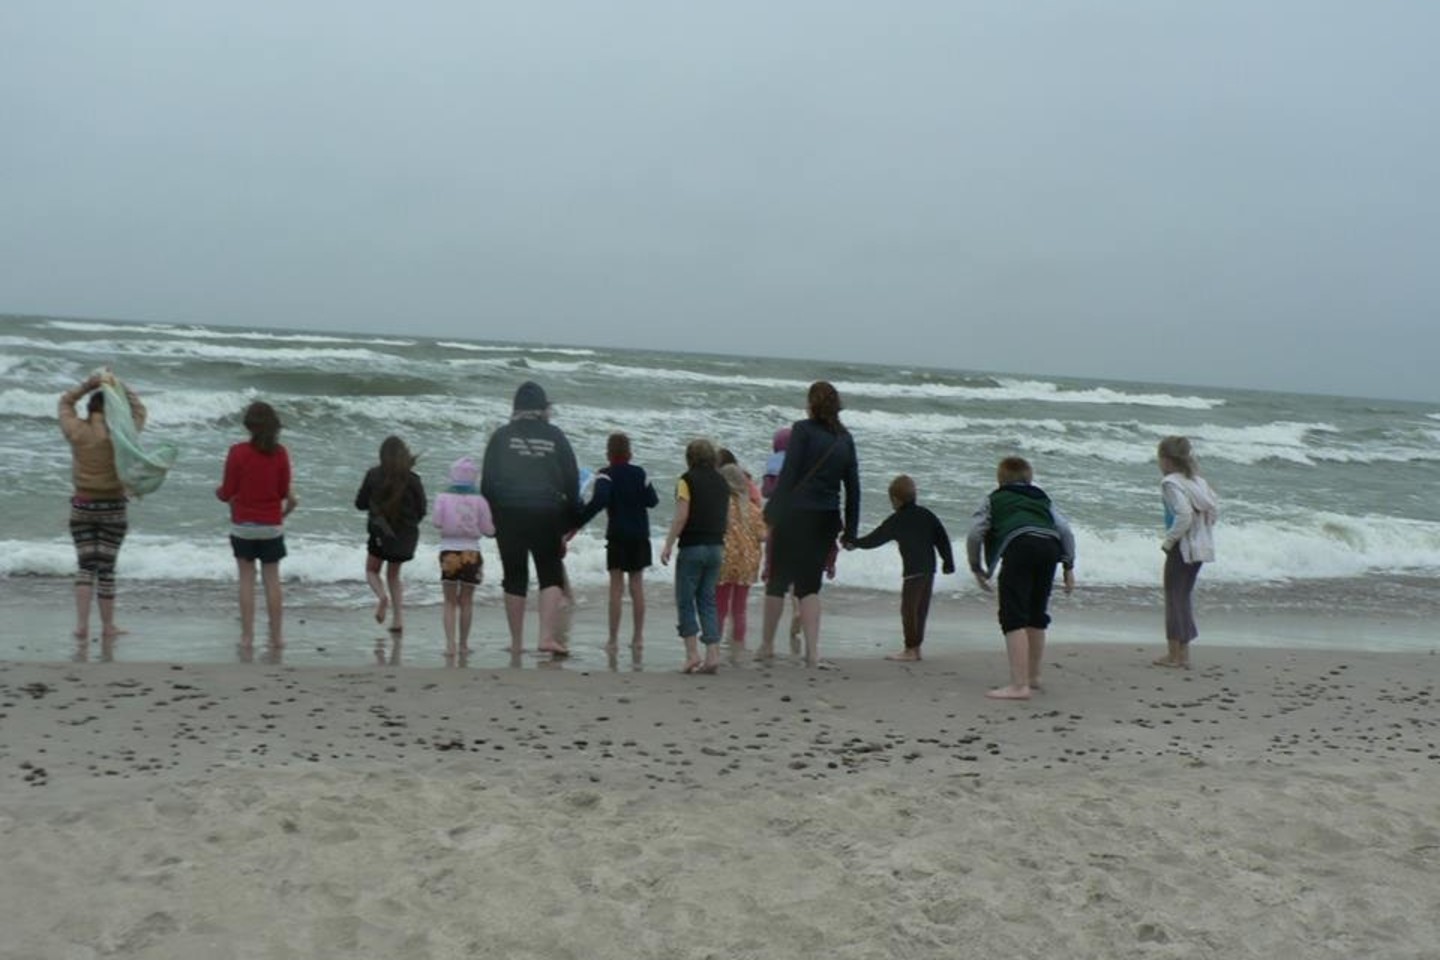 Didžiausią įspūdį vaikams paliko jūra. Nors oras buvo žvarbus, vėjas stiprus, bangos aukštos, vaikų veidai tiesiog švytėjo.<br>„Caritas“ nuotr.